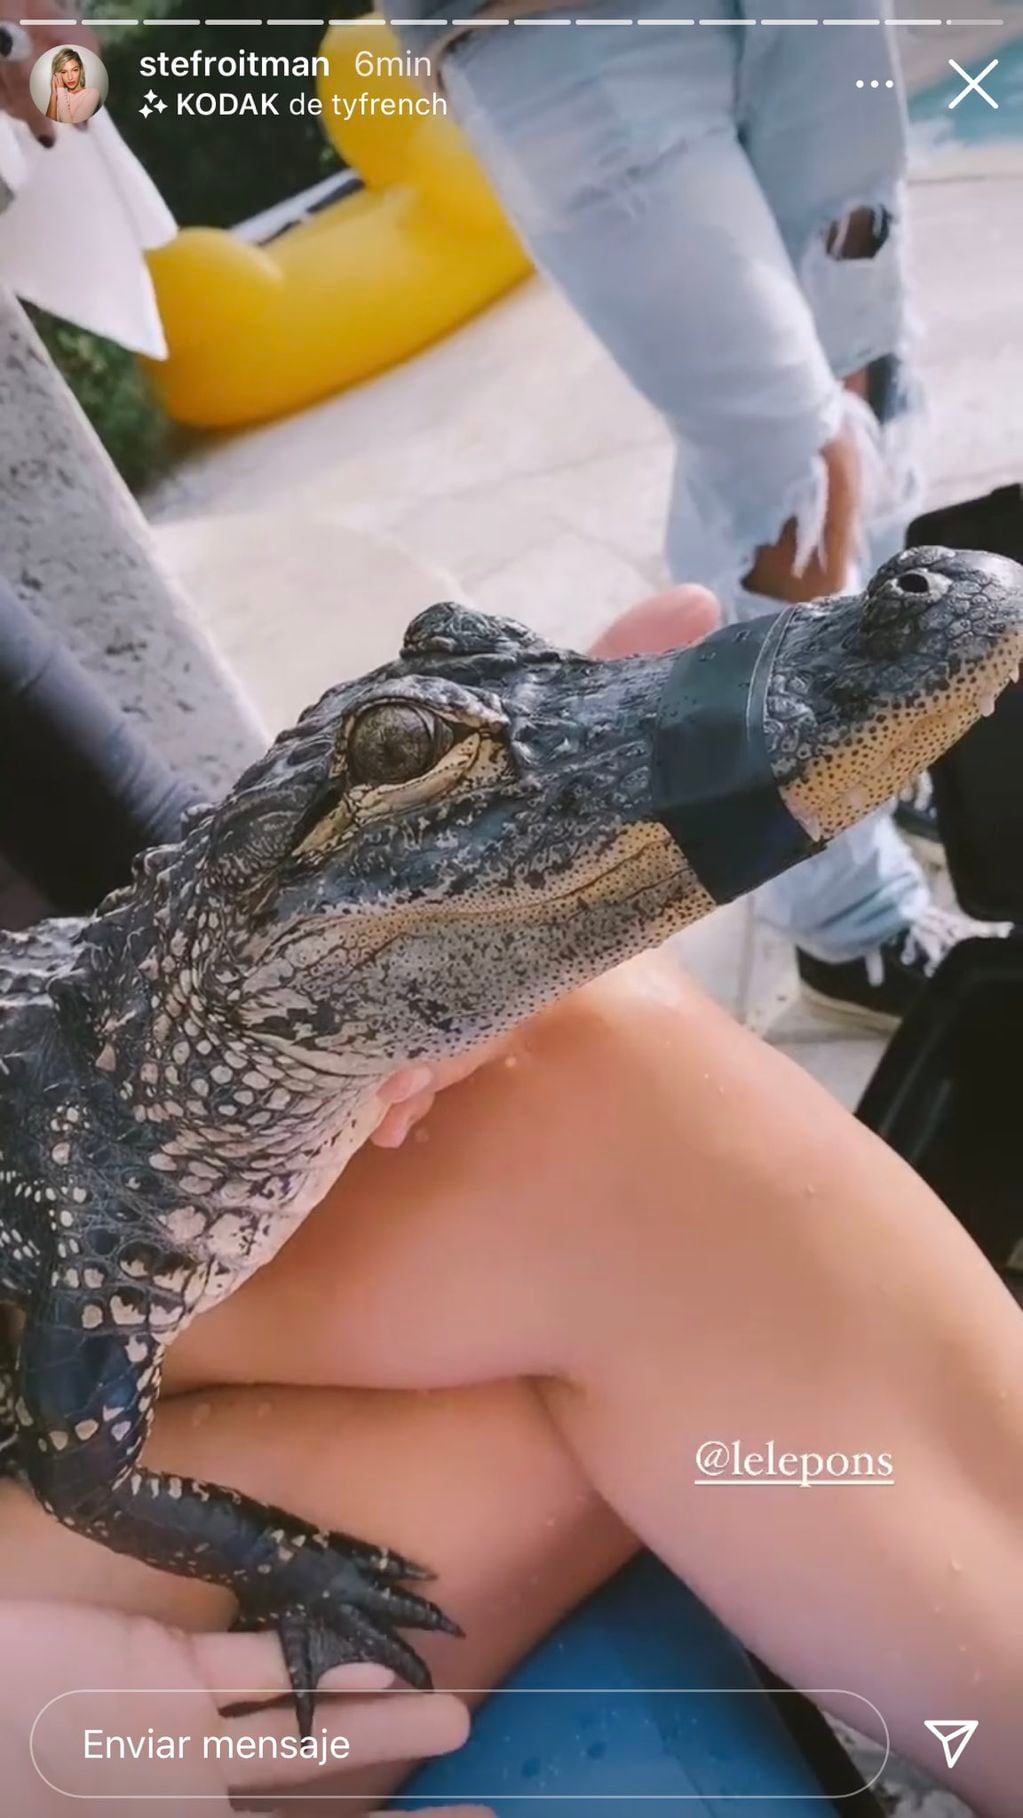 La influencer y la cantante compartieron imágenes junto a un cocodrilo en una pileta en Miami.